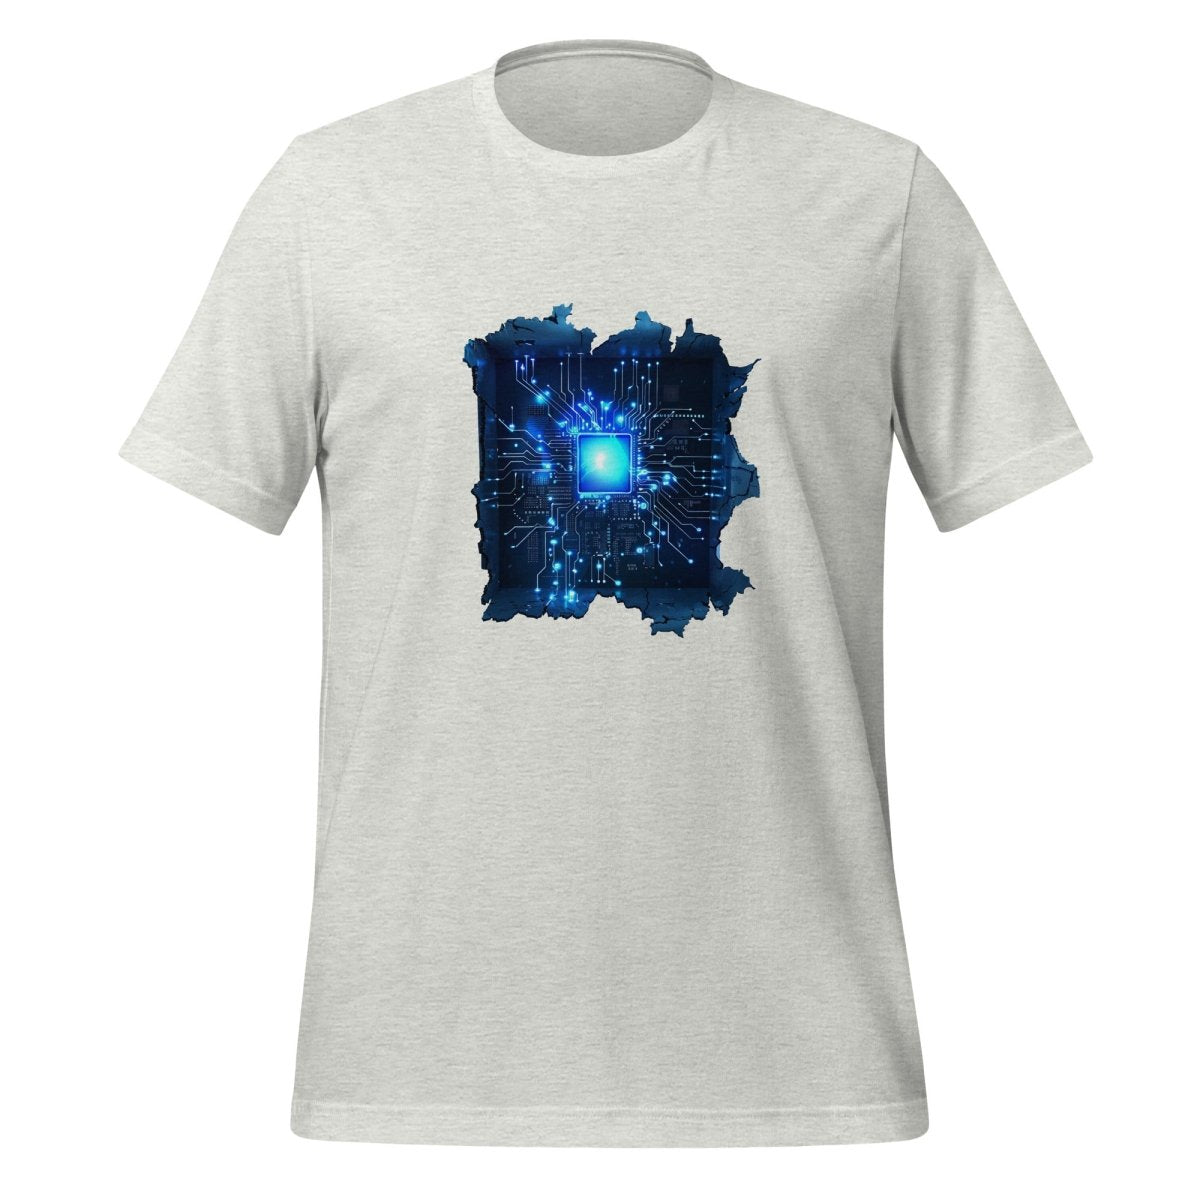 CPU Heart T - Shirt (unisex) - Ash - AI Store